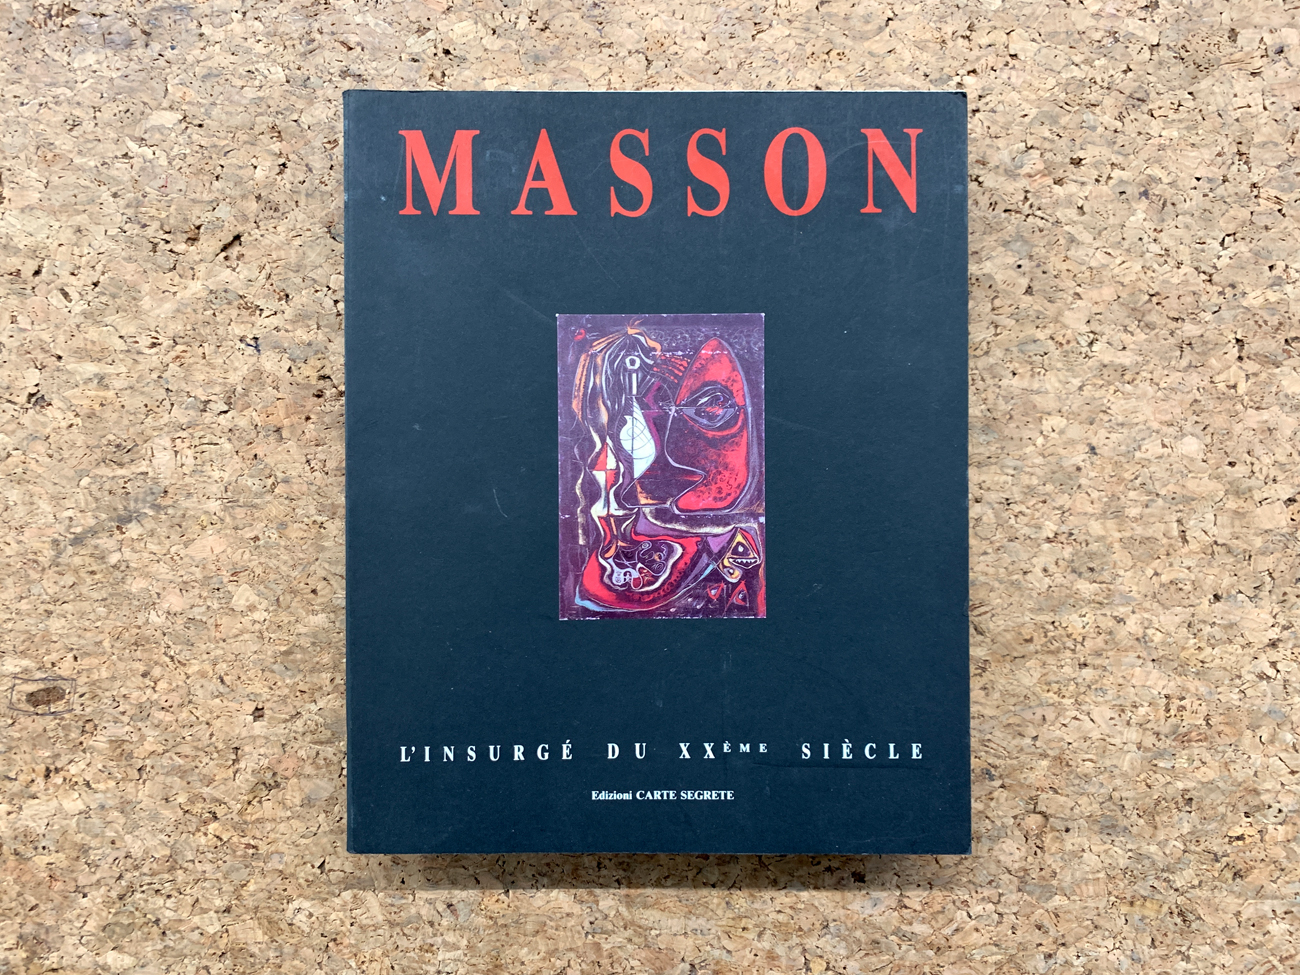 ANDRÉ MASSON  - Masson. L’insurgé du XXème siècle, 1989